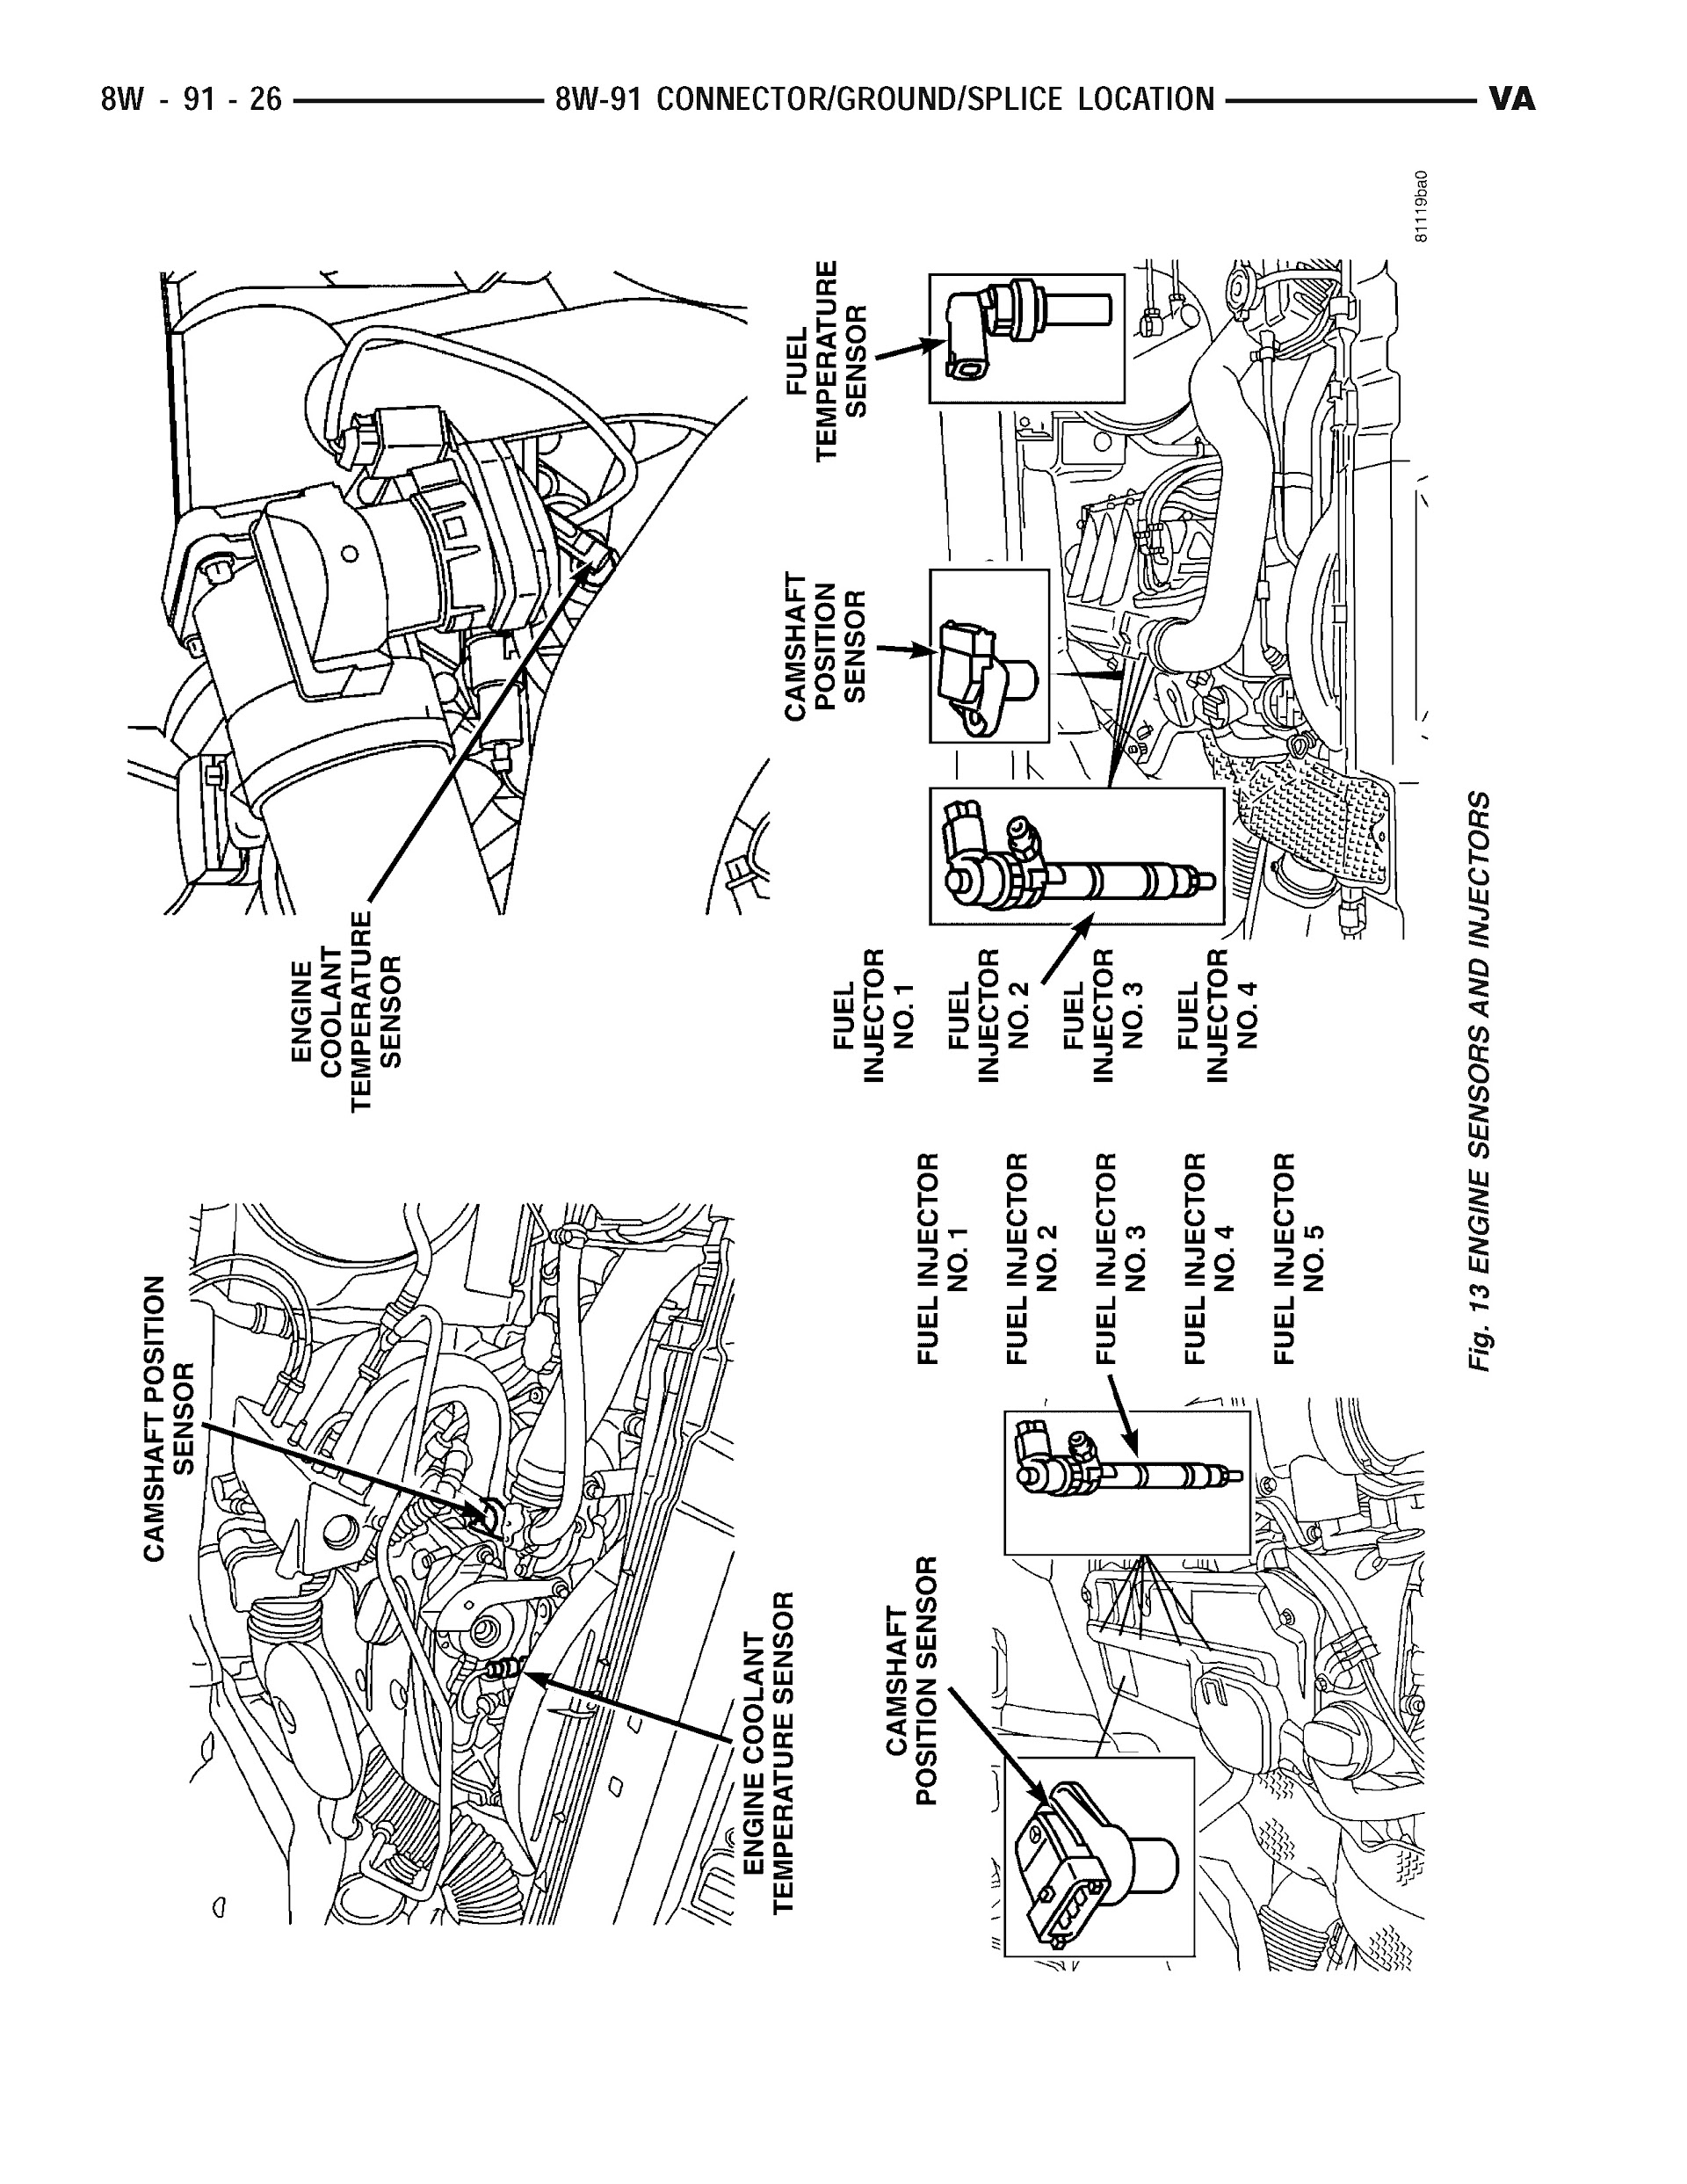 Download 2006 Dodge Sprinter Repair Manual